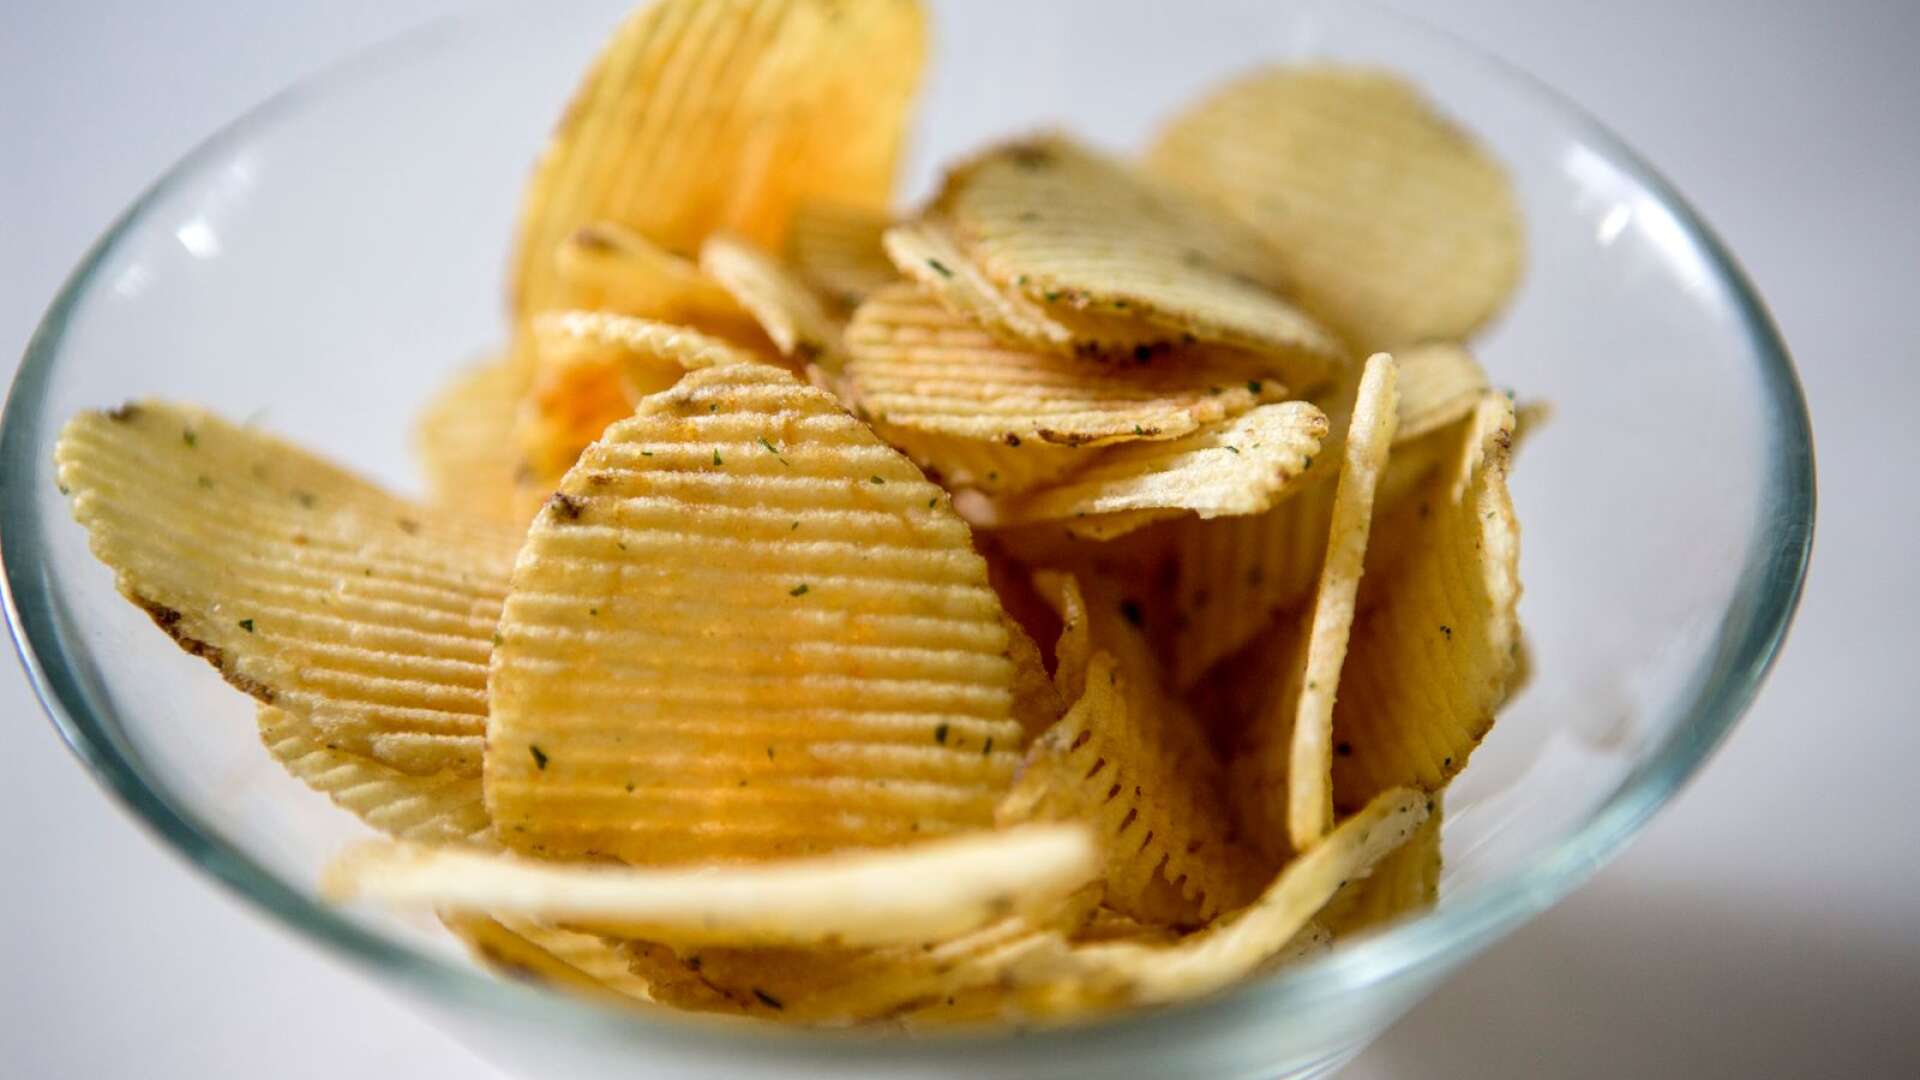 Det ska tydligen finnas en ansenlig mängd potatis som väntar på att bli chips, men det saknas solrosolja att fritera dem i, skriver Byrån.